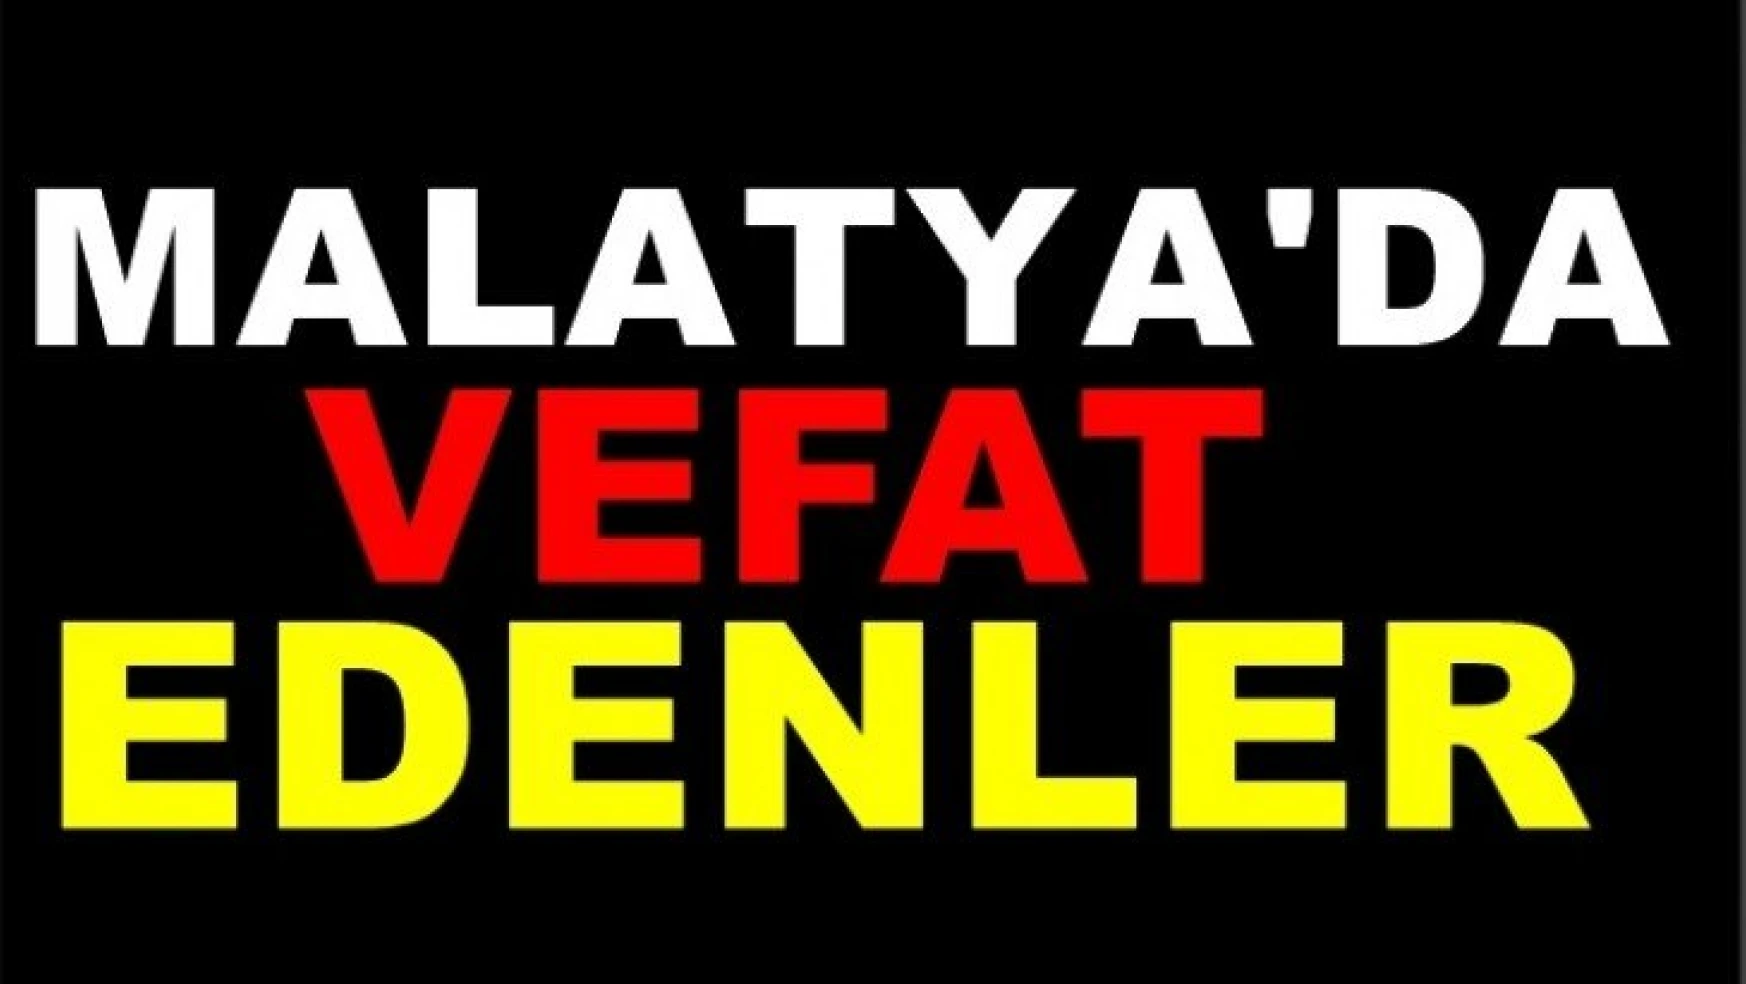 Malatya'da 13 kişi vefat etti